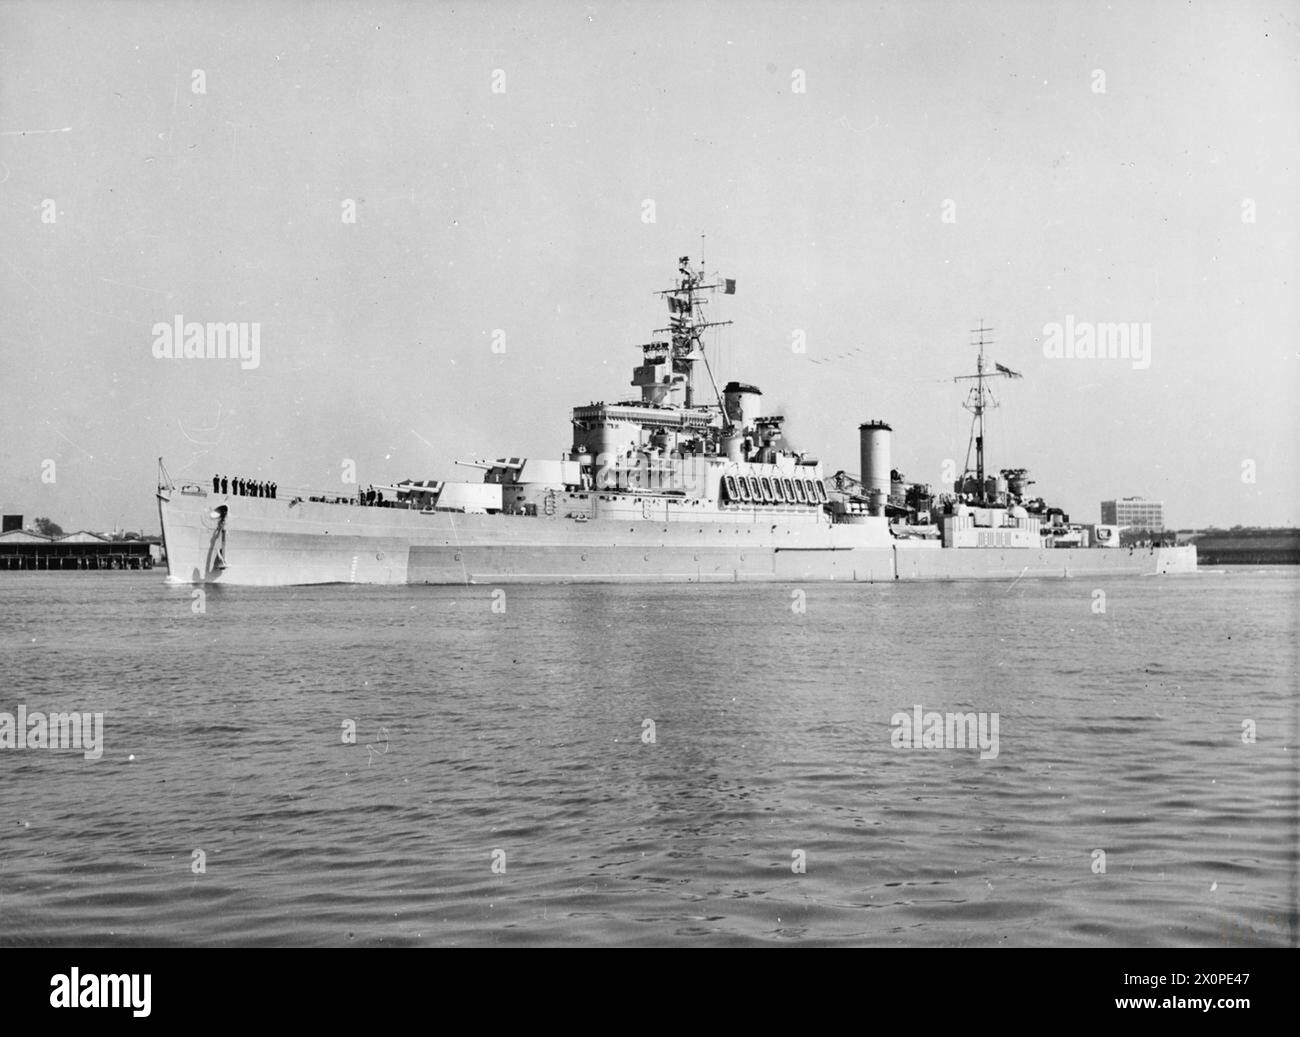 HMS UGANDA, CROISEUR BRITANNIQUE. 1944, EN MER. - , Banque D'Images